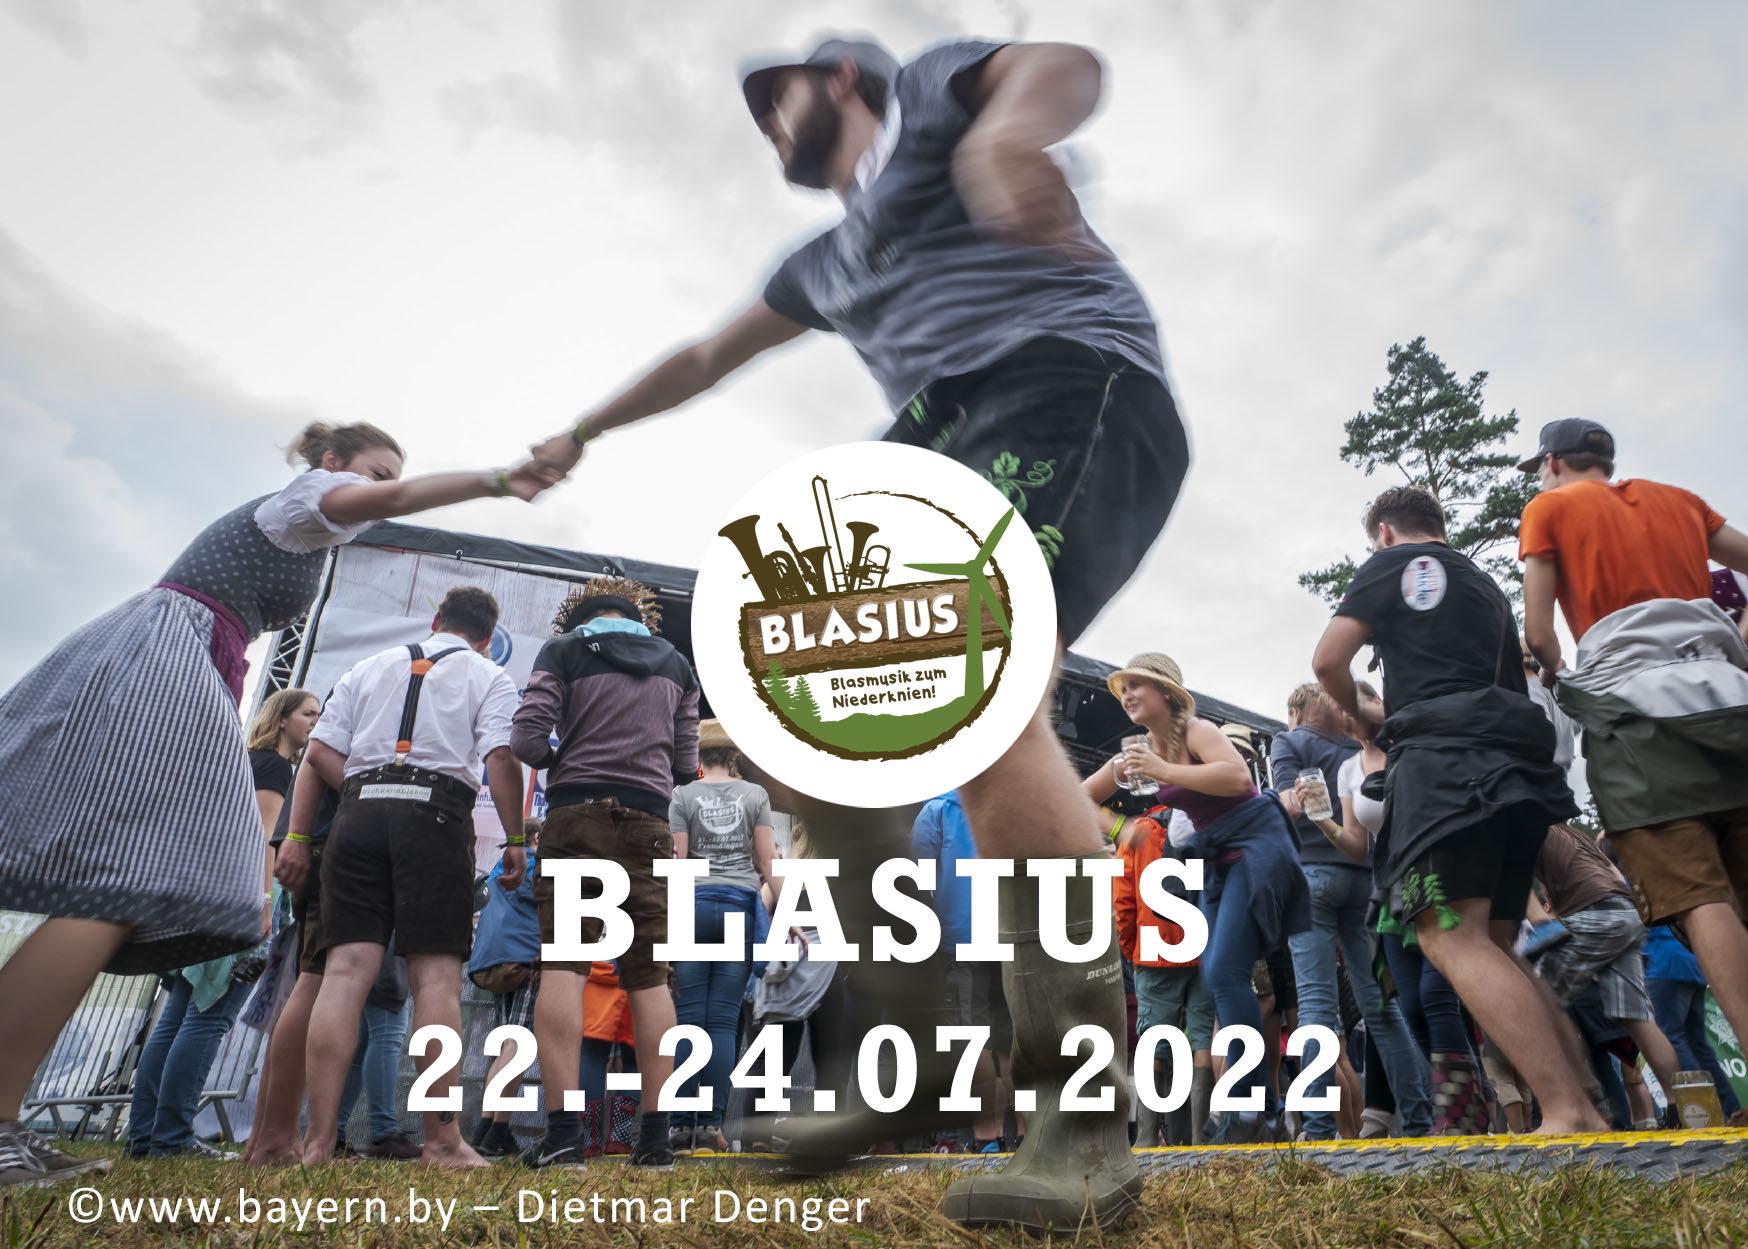 Blasius-Festival 2018